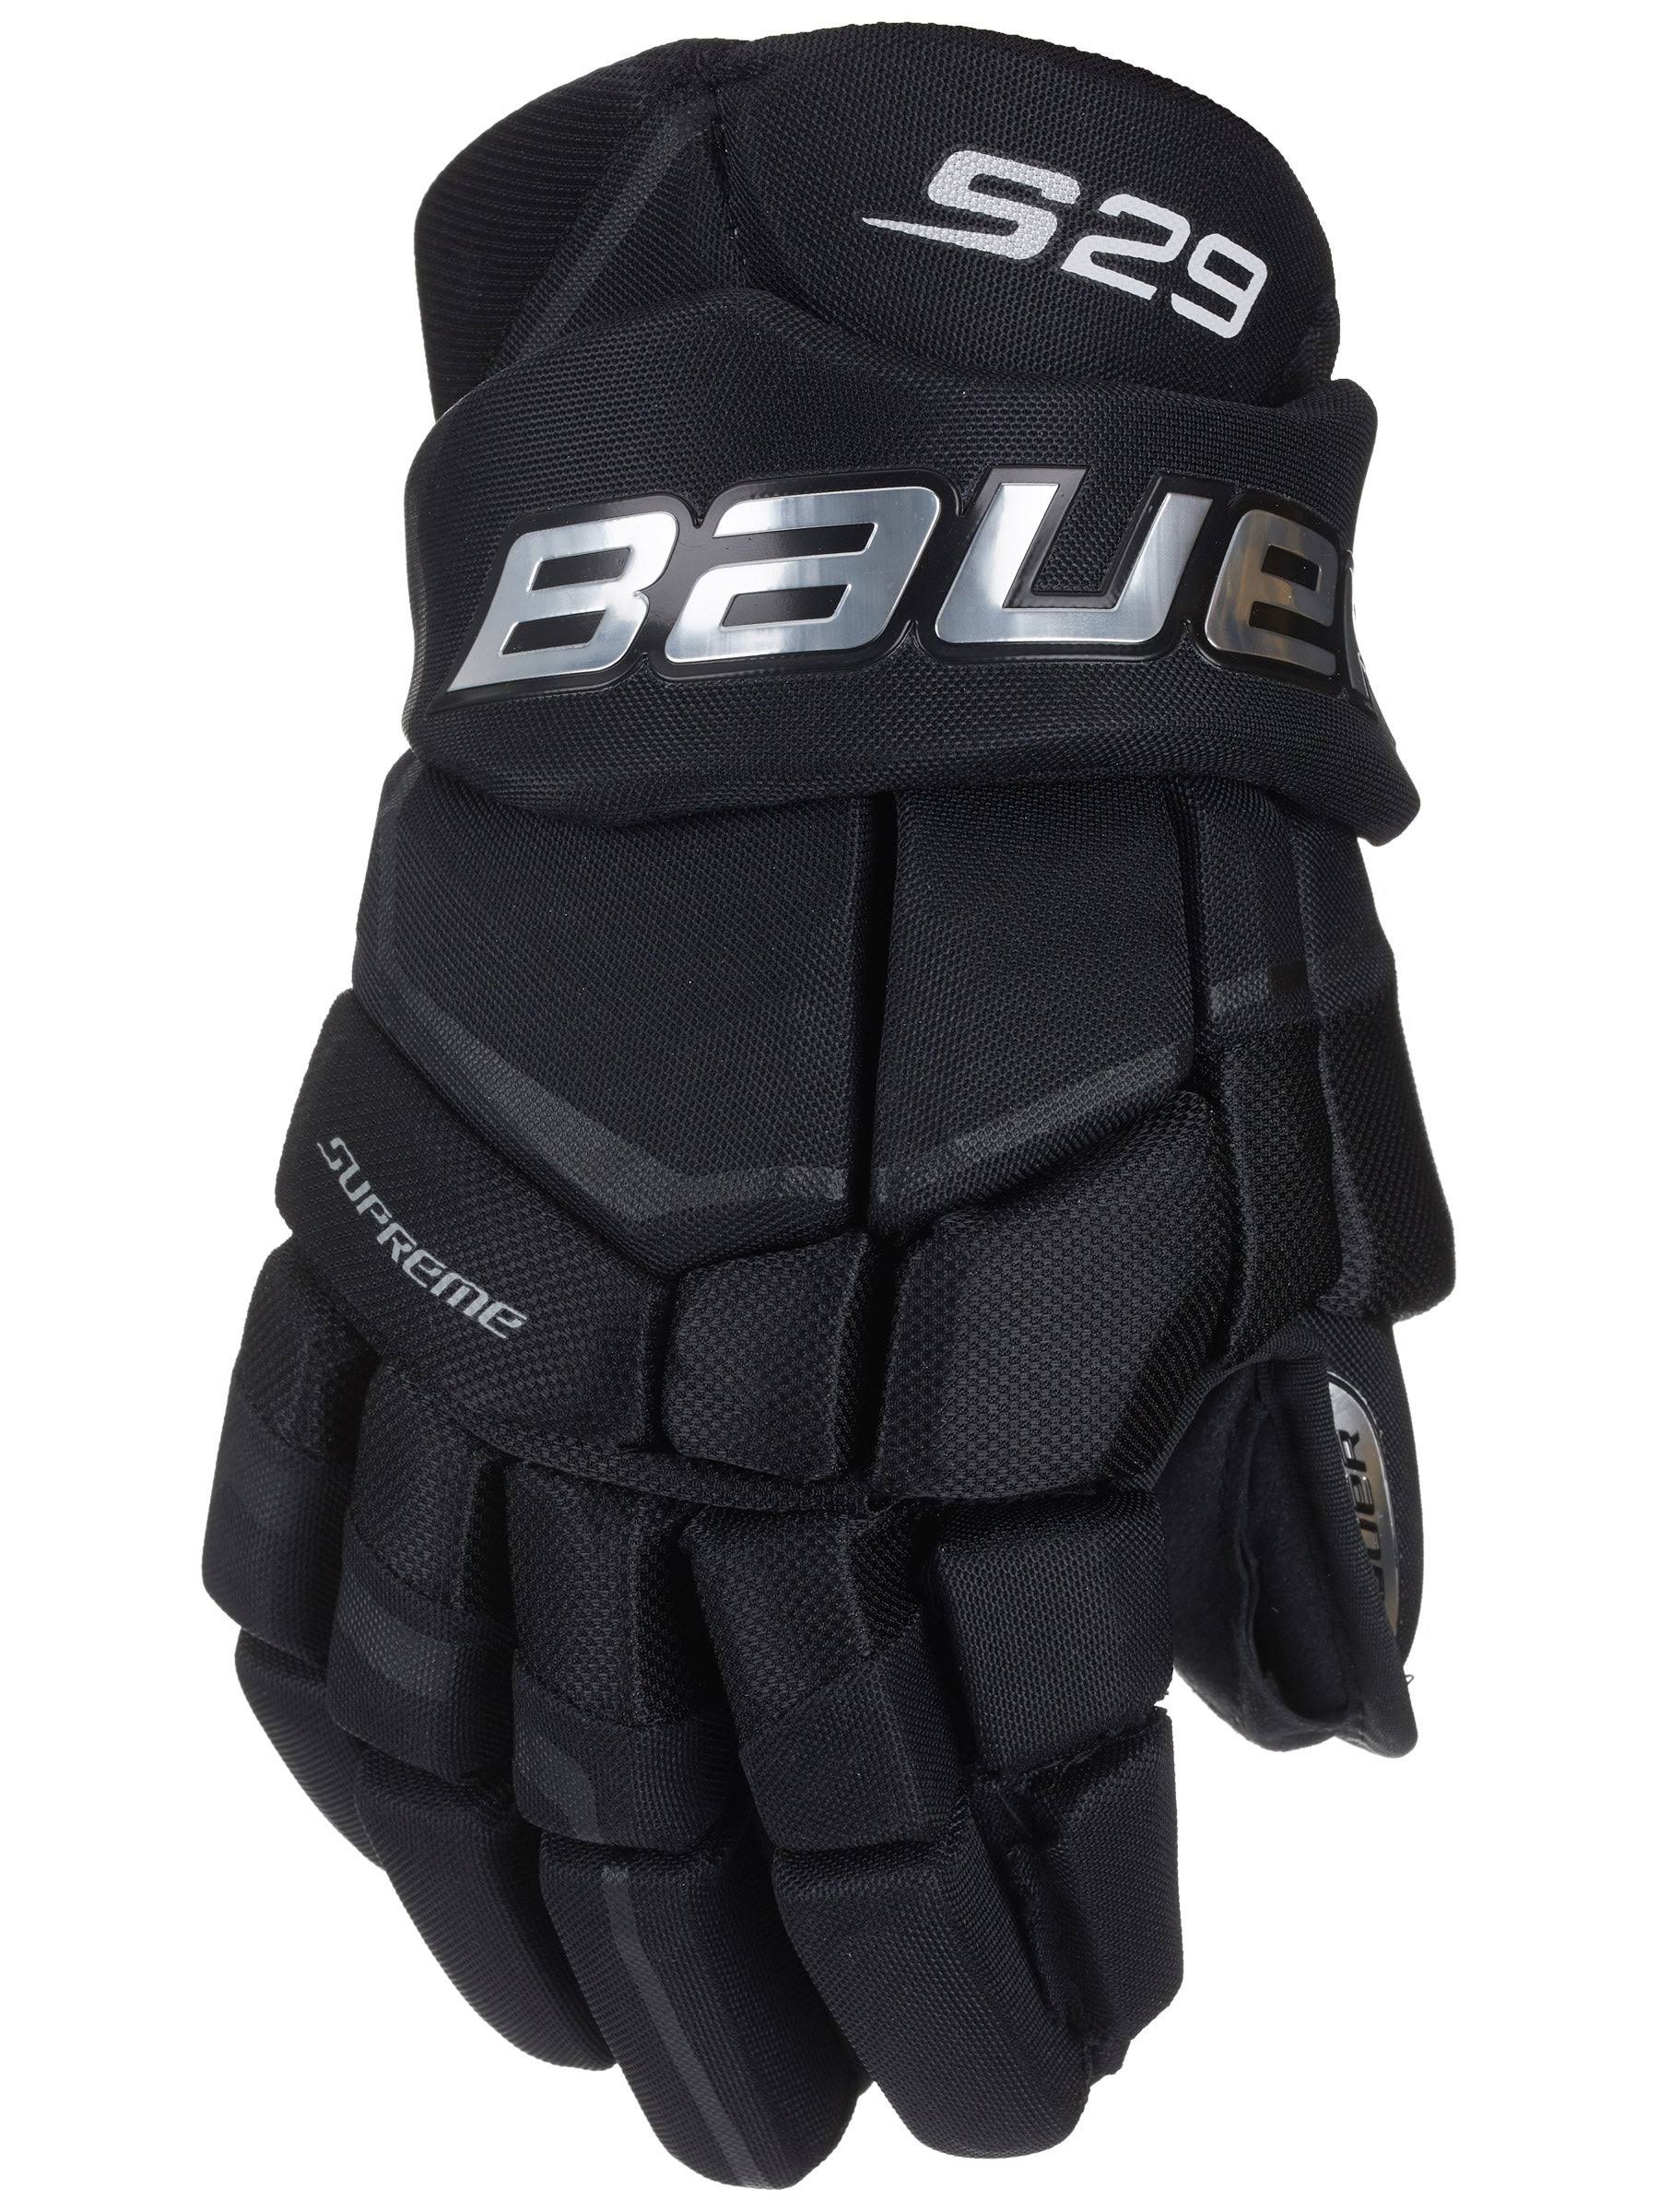 Bauer Supreme S29 Hockey Gloves - Junior - Black - 10.0"